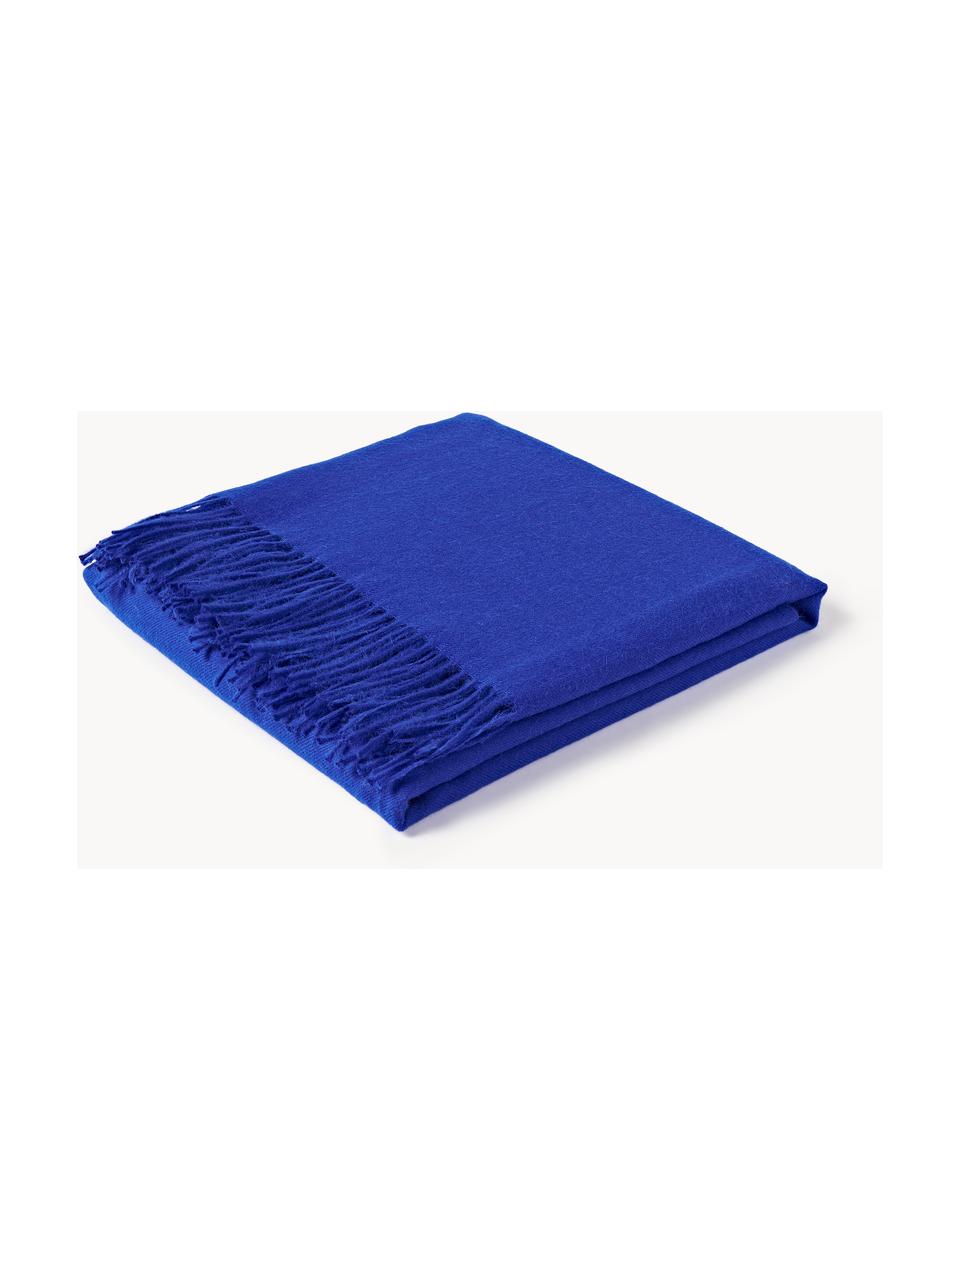 Plaid Luxury aus Babyalpaka-Wolle, 100 % Babyalpaka-Wolle

Diese Decke ist aus wunderbar weicher, hochwertiger Babyalpaka-Wolle gewebt. Sie schmeichelt der Haut und spendet wohlige Wärme, ist strapazierfähig aber dennoch leicht und besitzt hervorragende temperaturregulierende Eigenschaften. Dadurch ist diese Decke der perfekte Begleiter für kühle Sommerabende ebenso wie kalte Wintertage., Royalblau, B 130 x L 200 cm